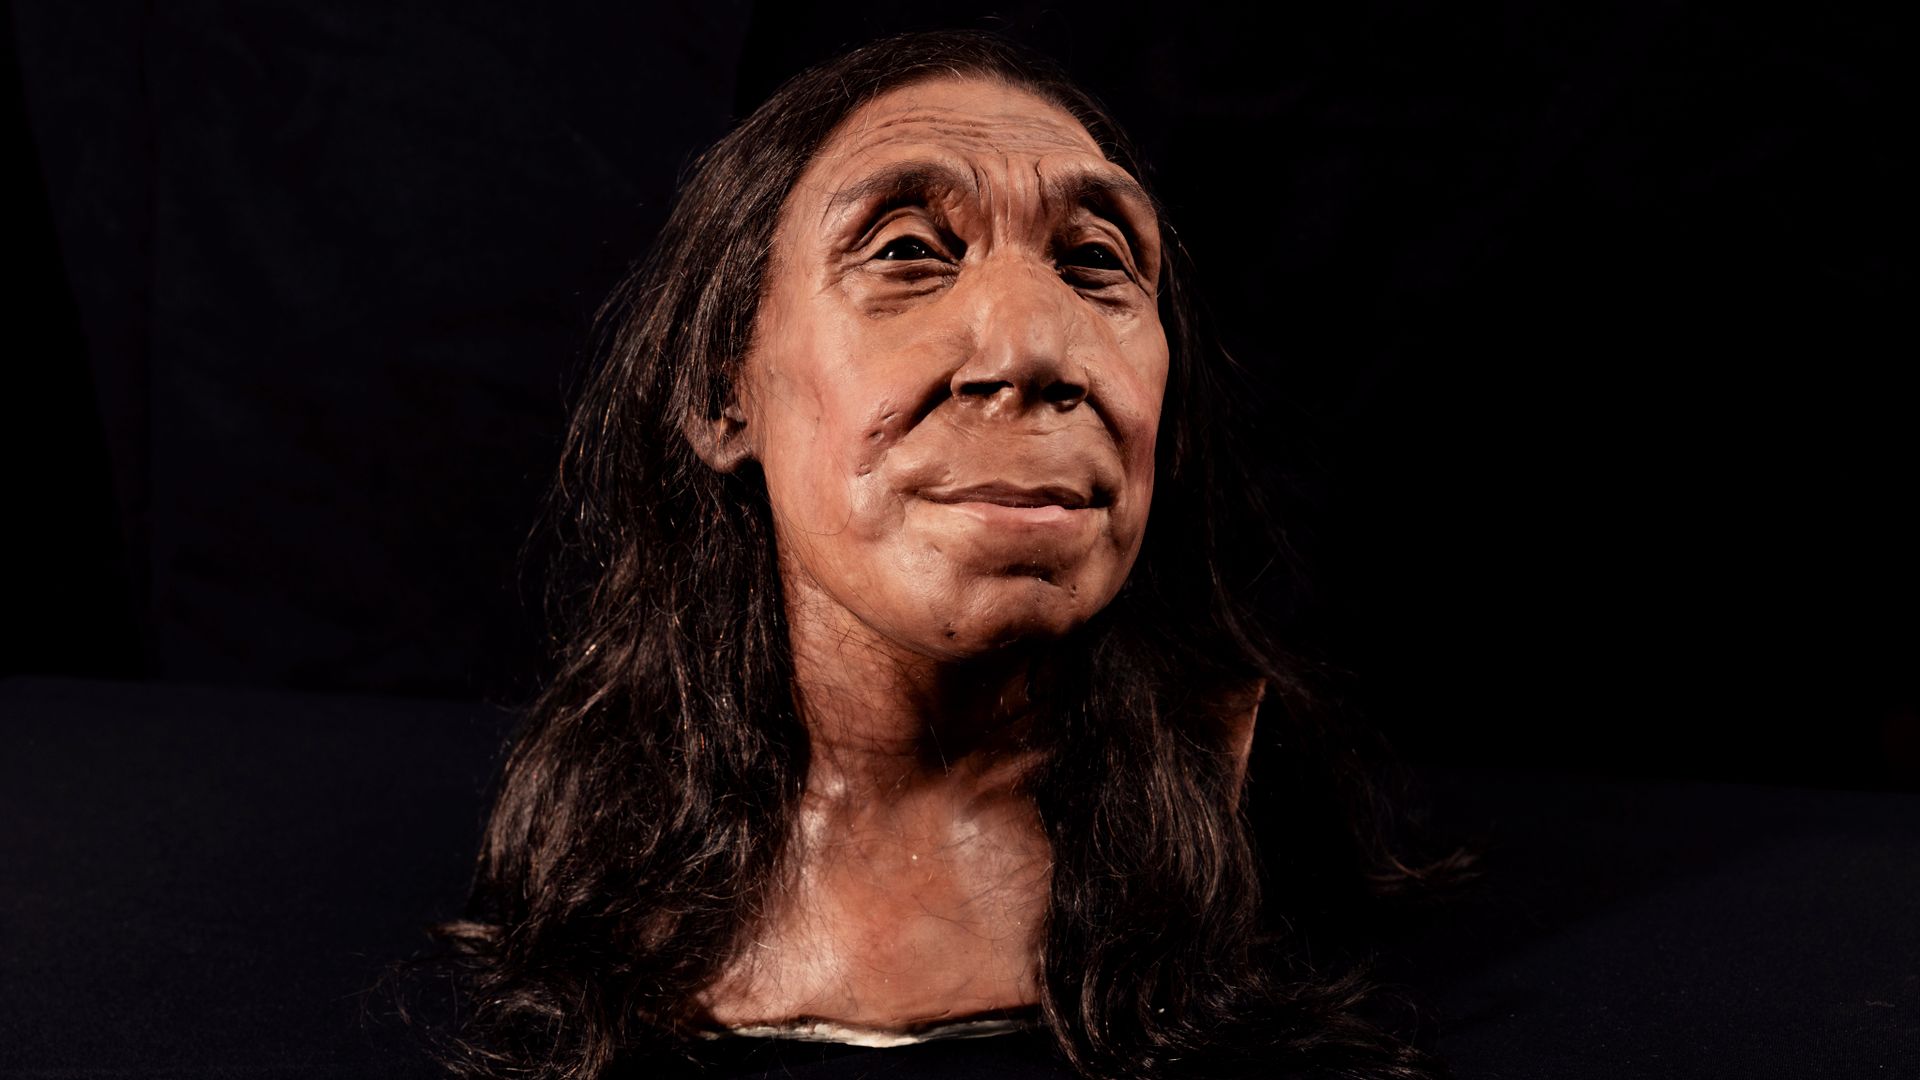 neandertaler: forscher rekonstruieren gesicht von 75.000 jahre alter neandertaler-frau